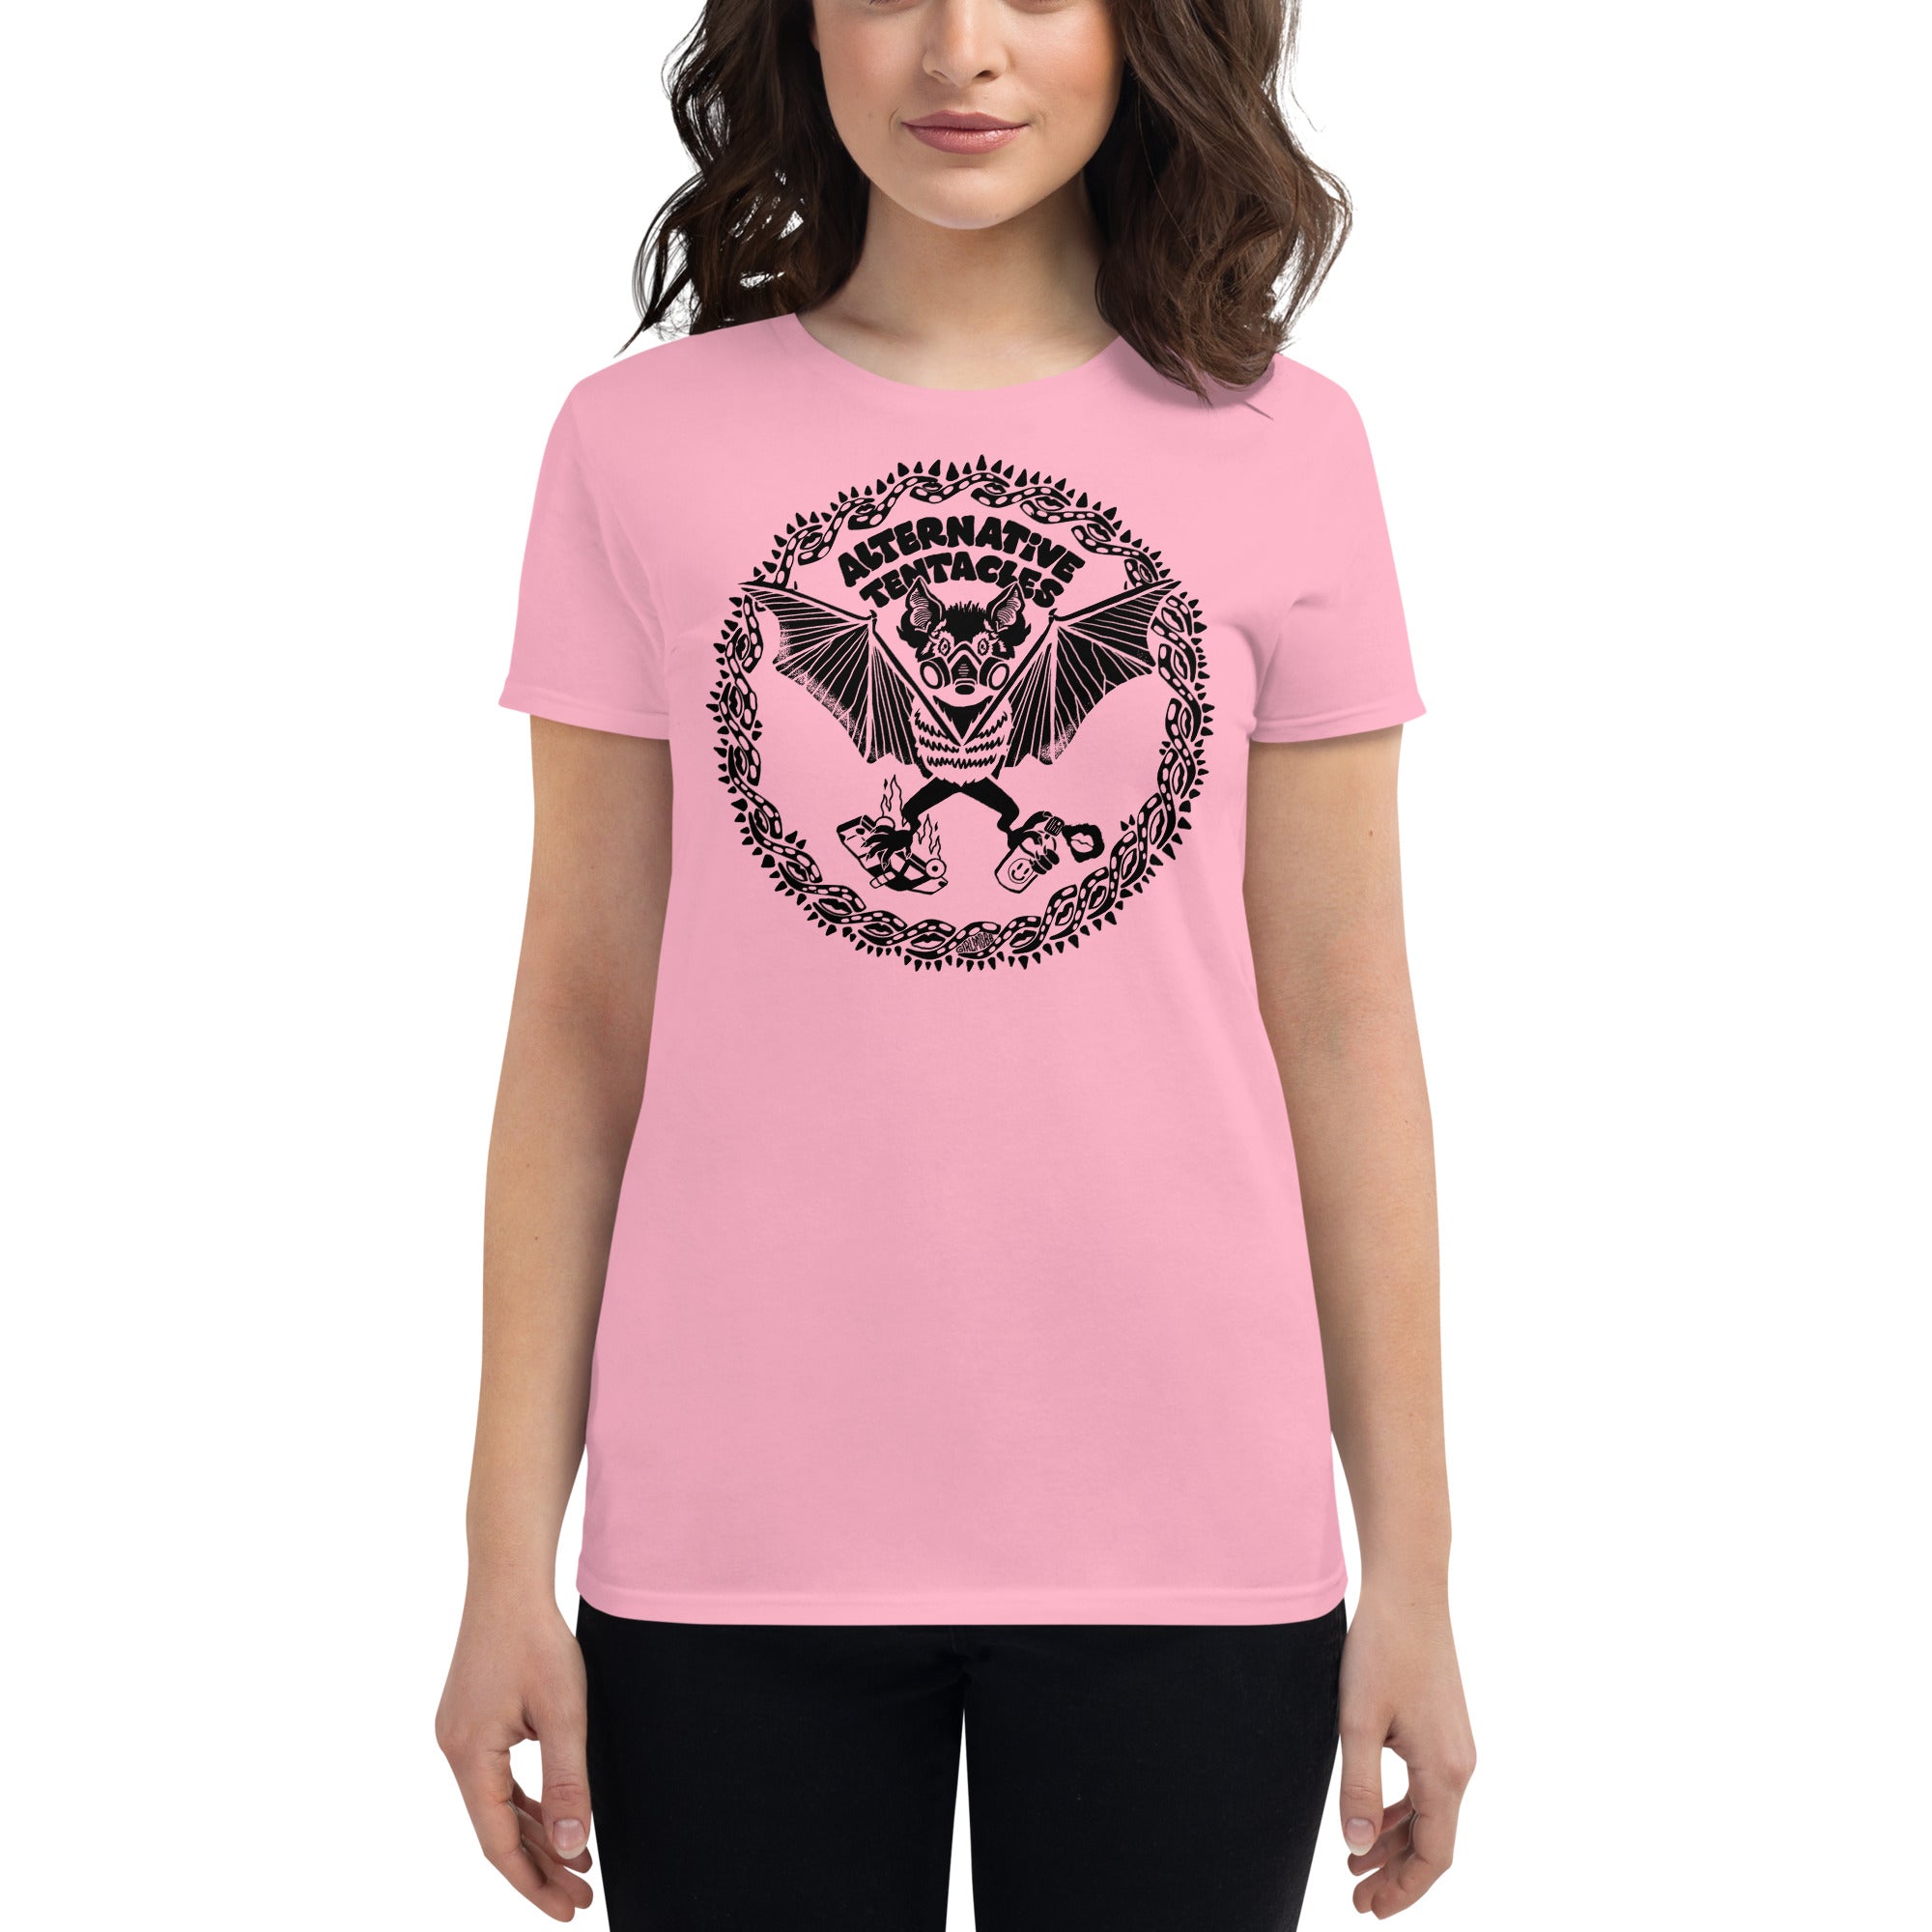 A.T. Bat Logo - "Girl Mobb" Femme Pink T-shirt